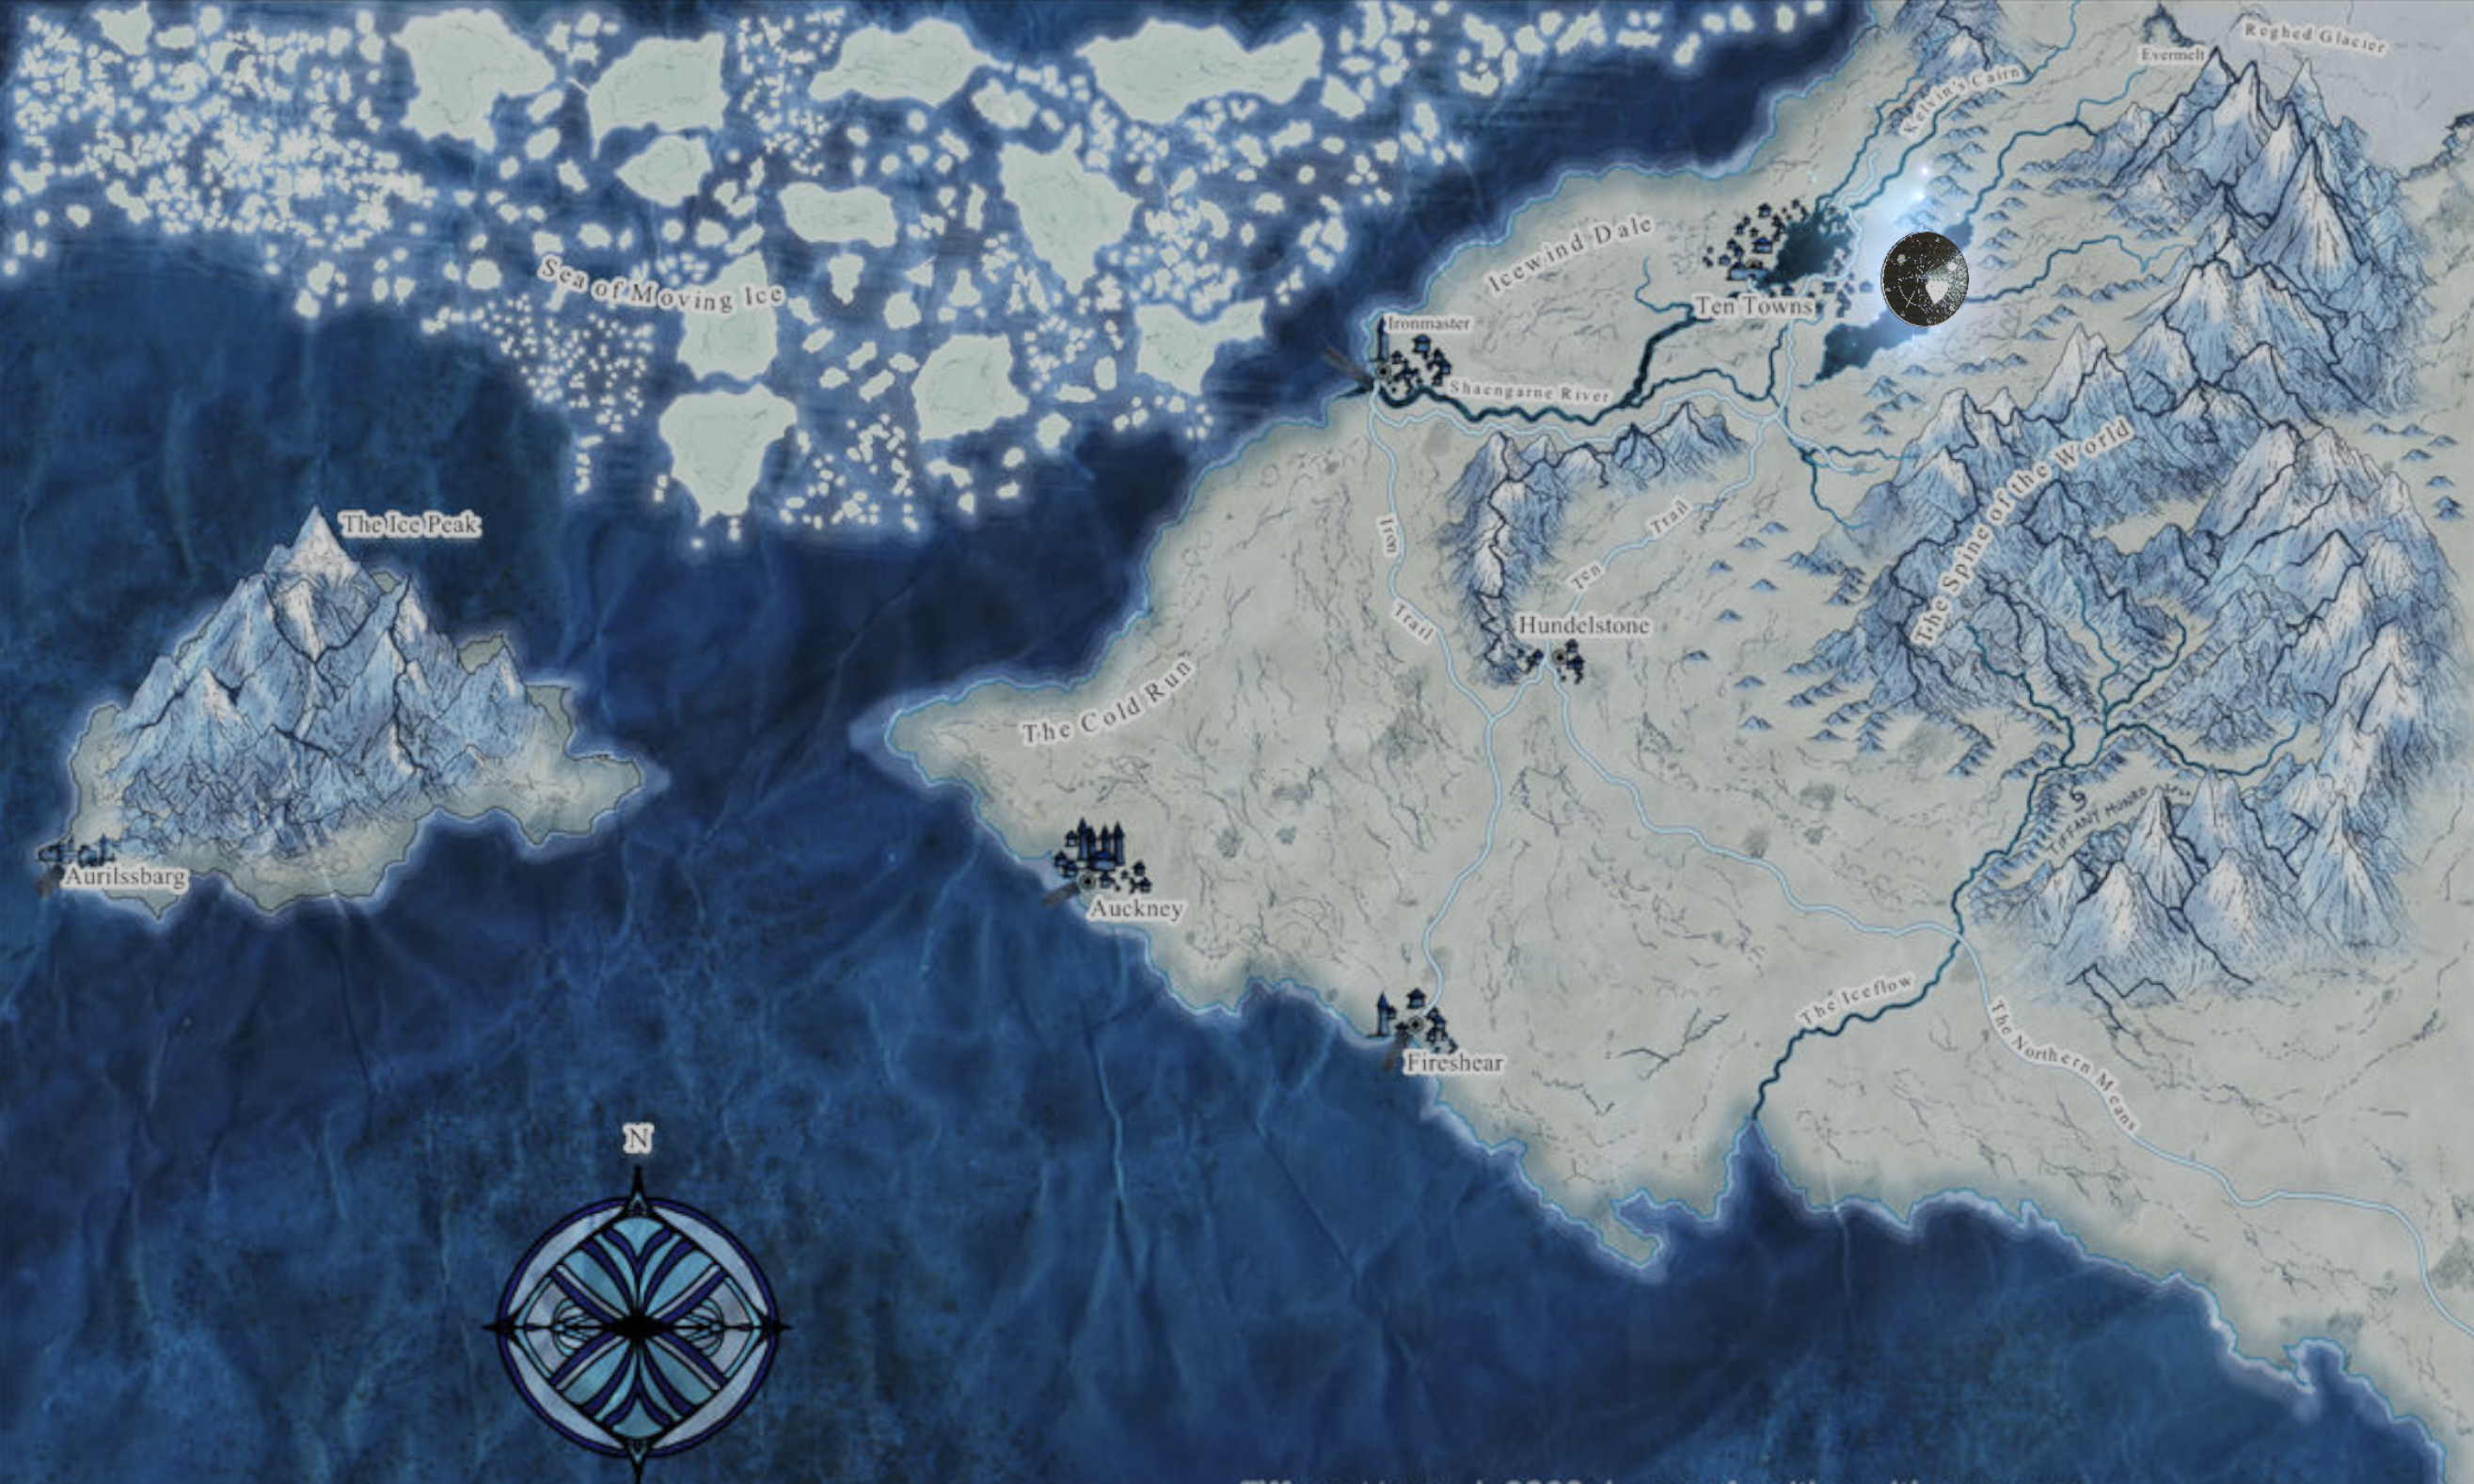 https://www.deviantart.com/calthyechild/art/Icewind-Dale-Region-Map-852182242